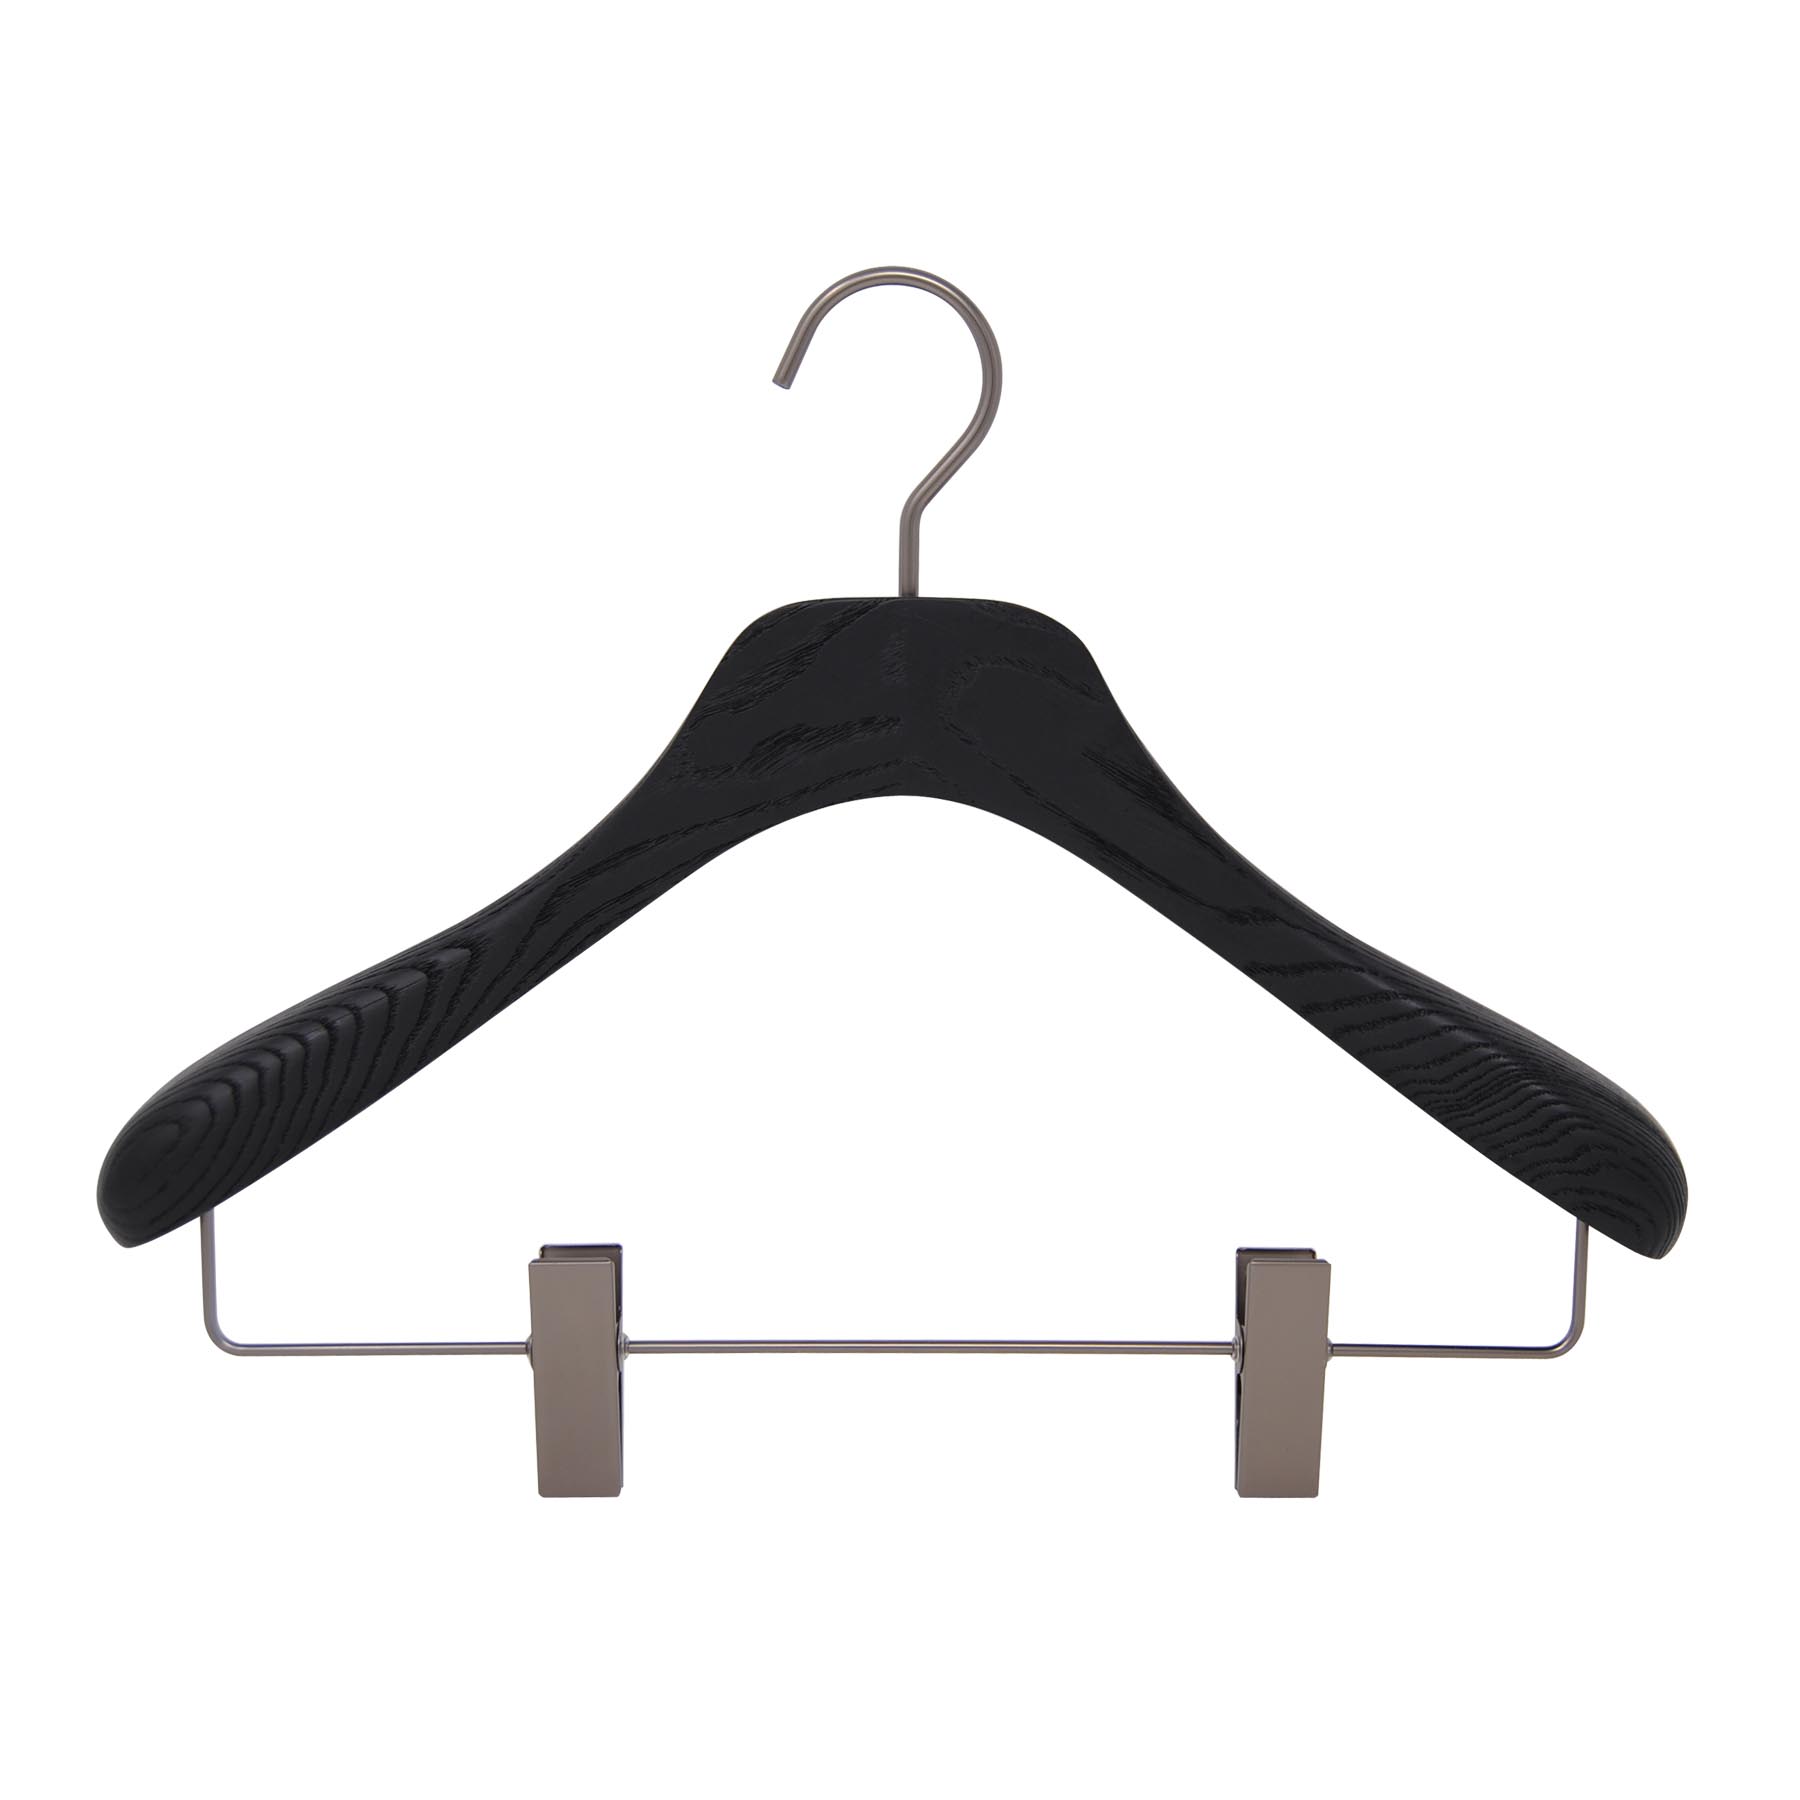 6 cintres pour veste, tailleur ou costume avec pinces - Coloris noir brossé